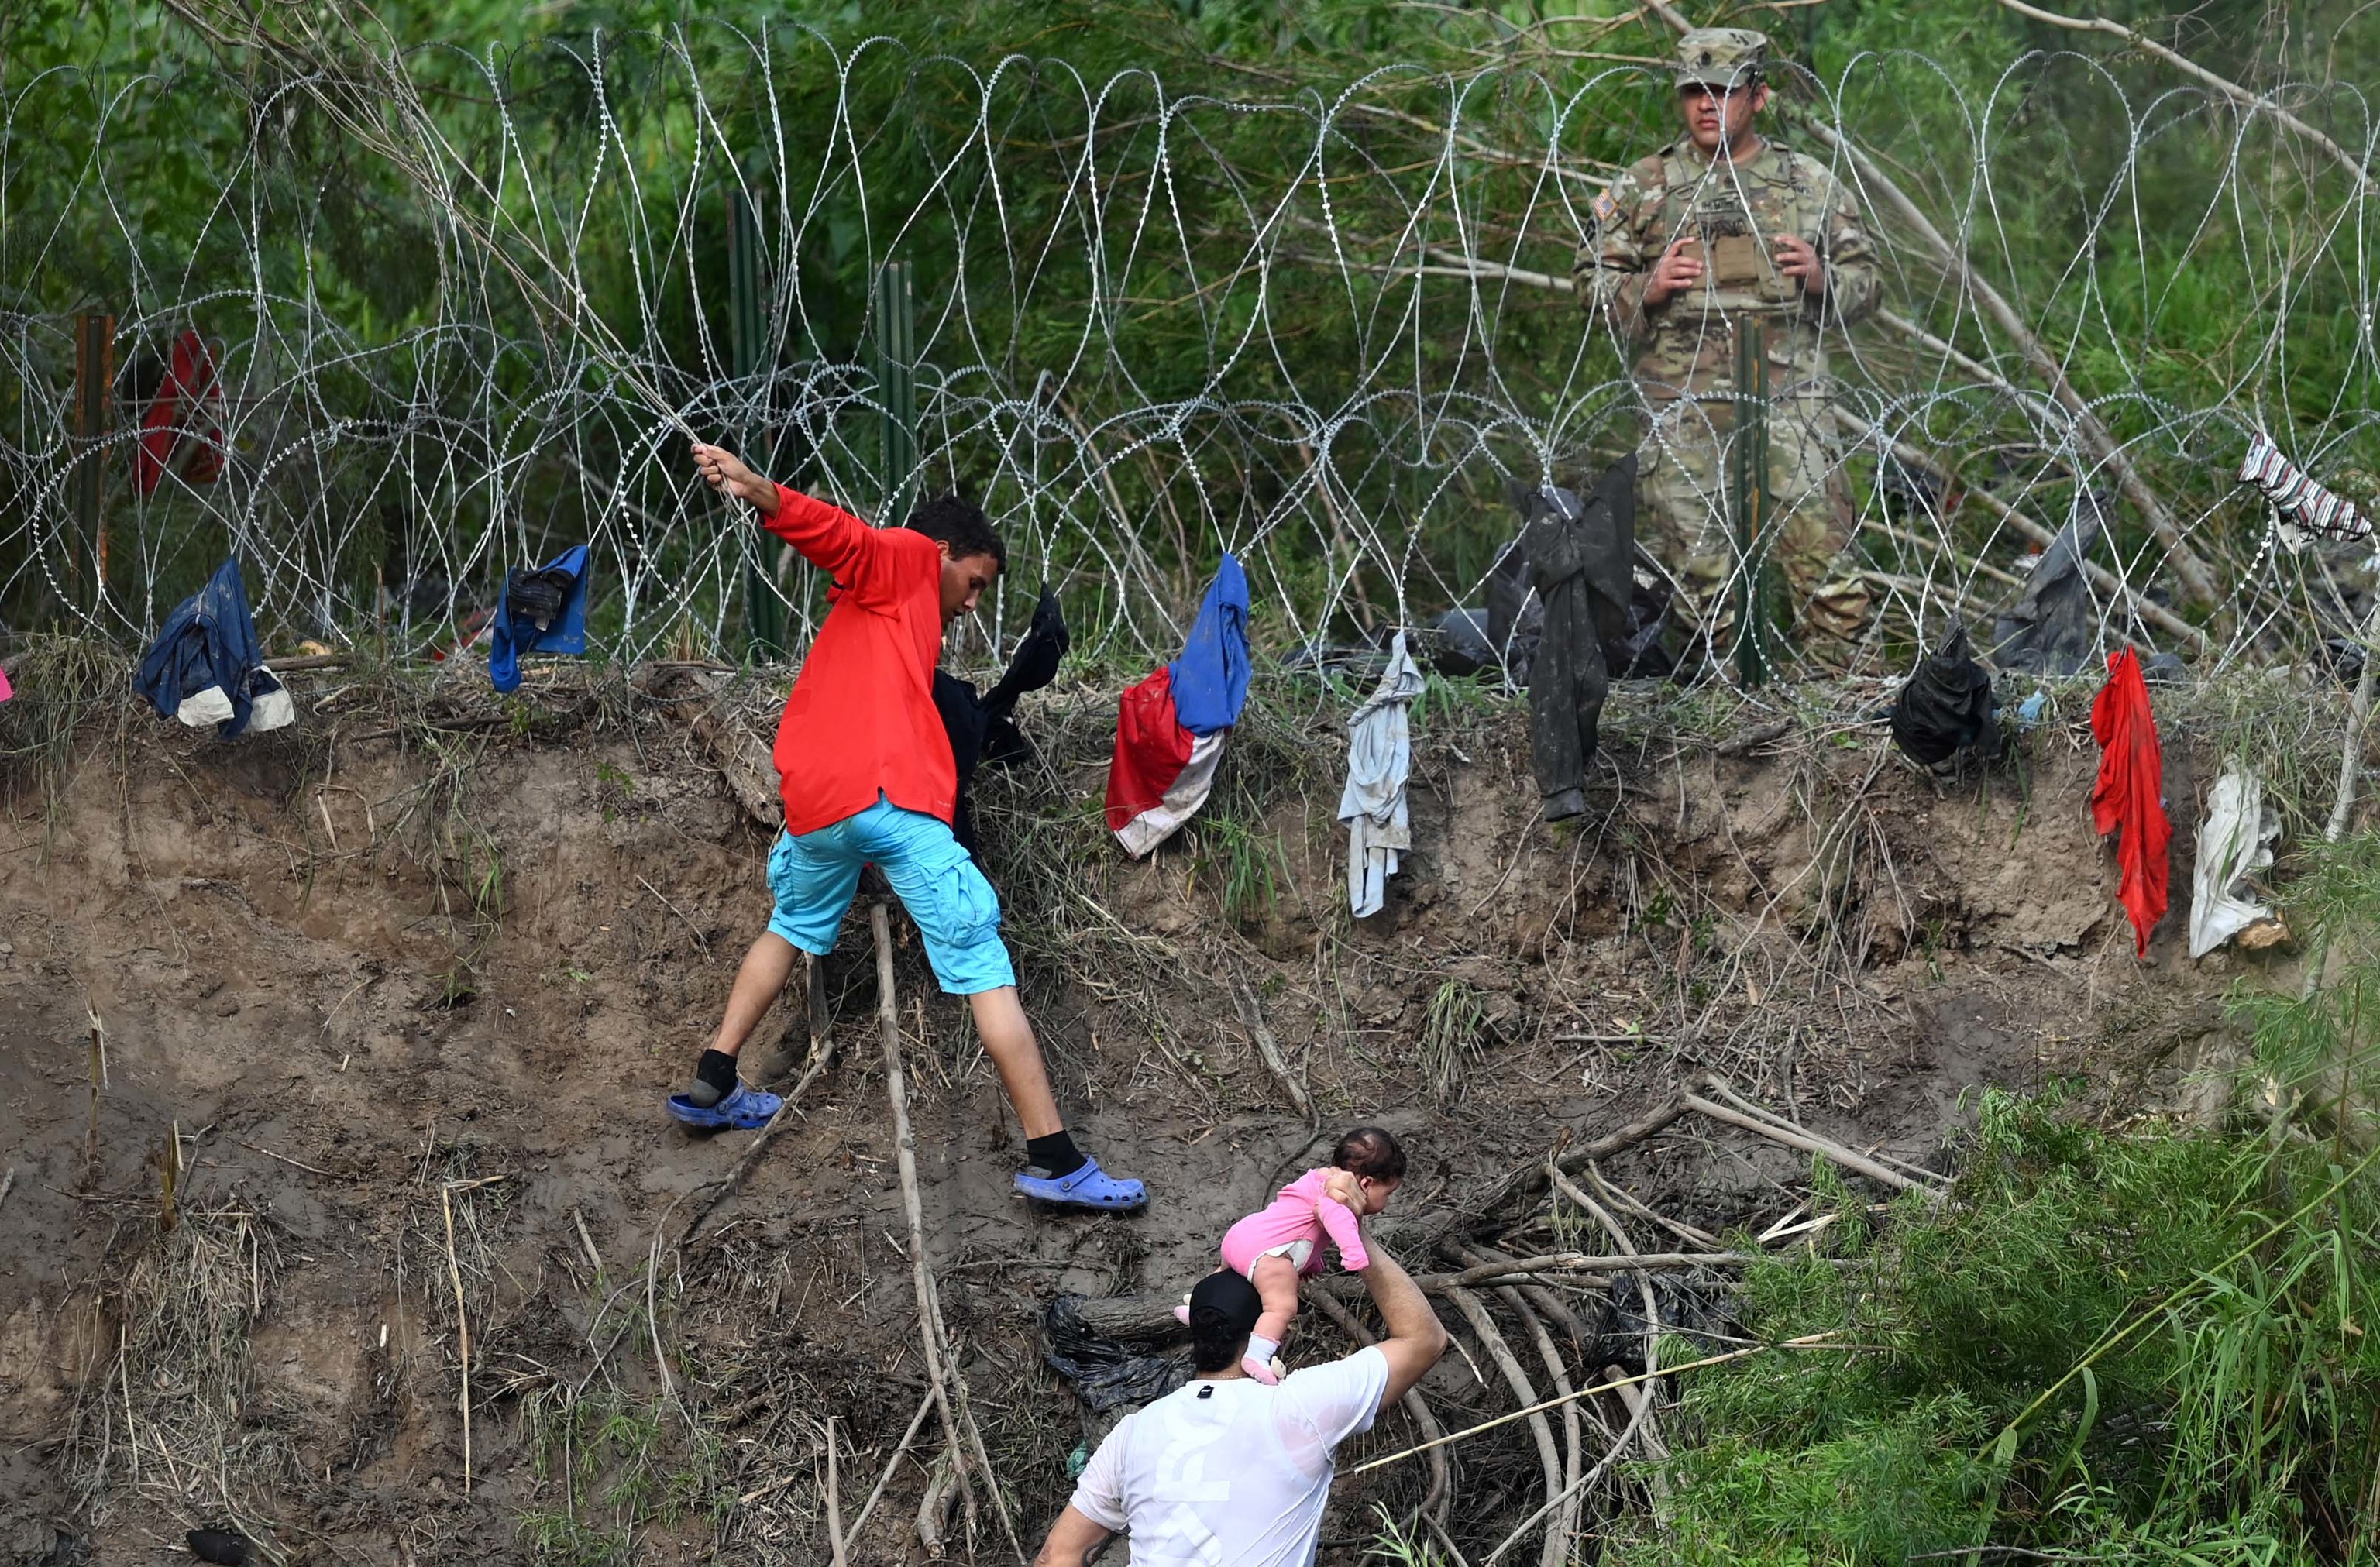 Un militar observa los migrantes que tratan de cruzar el Ro Grande hacia EEUU.